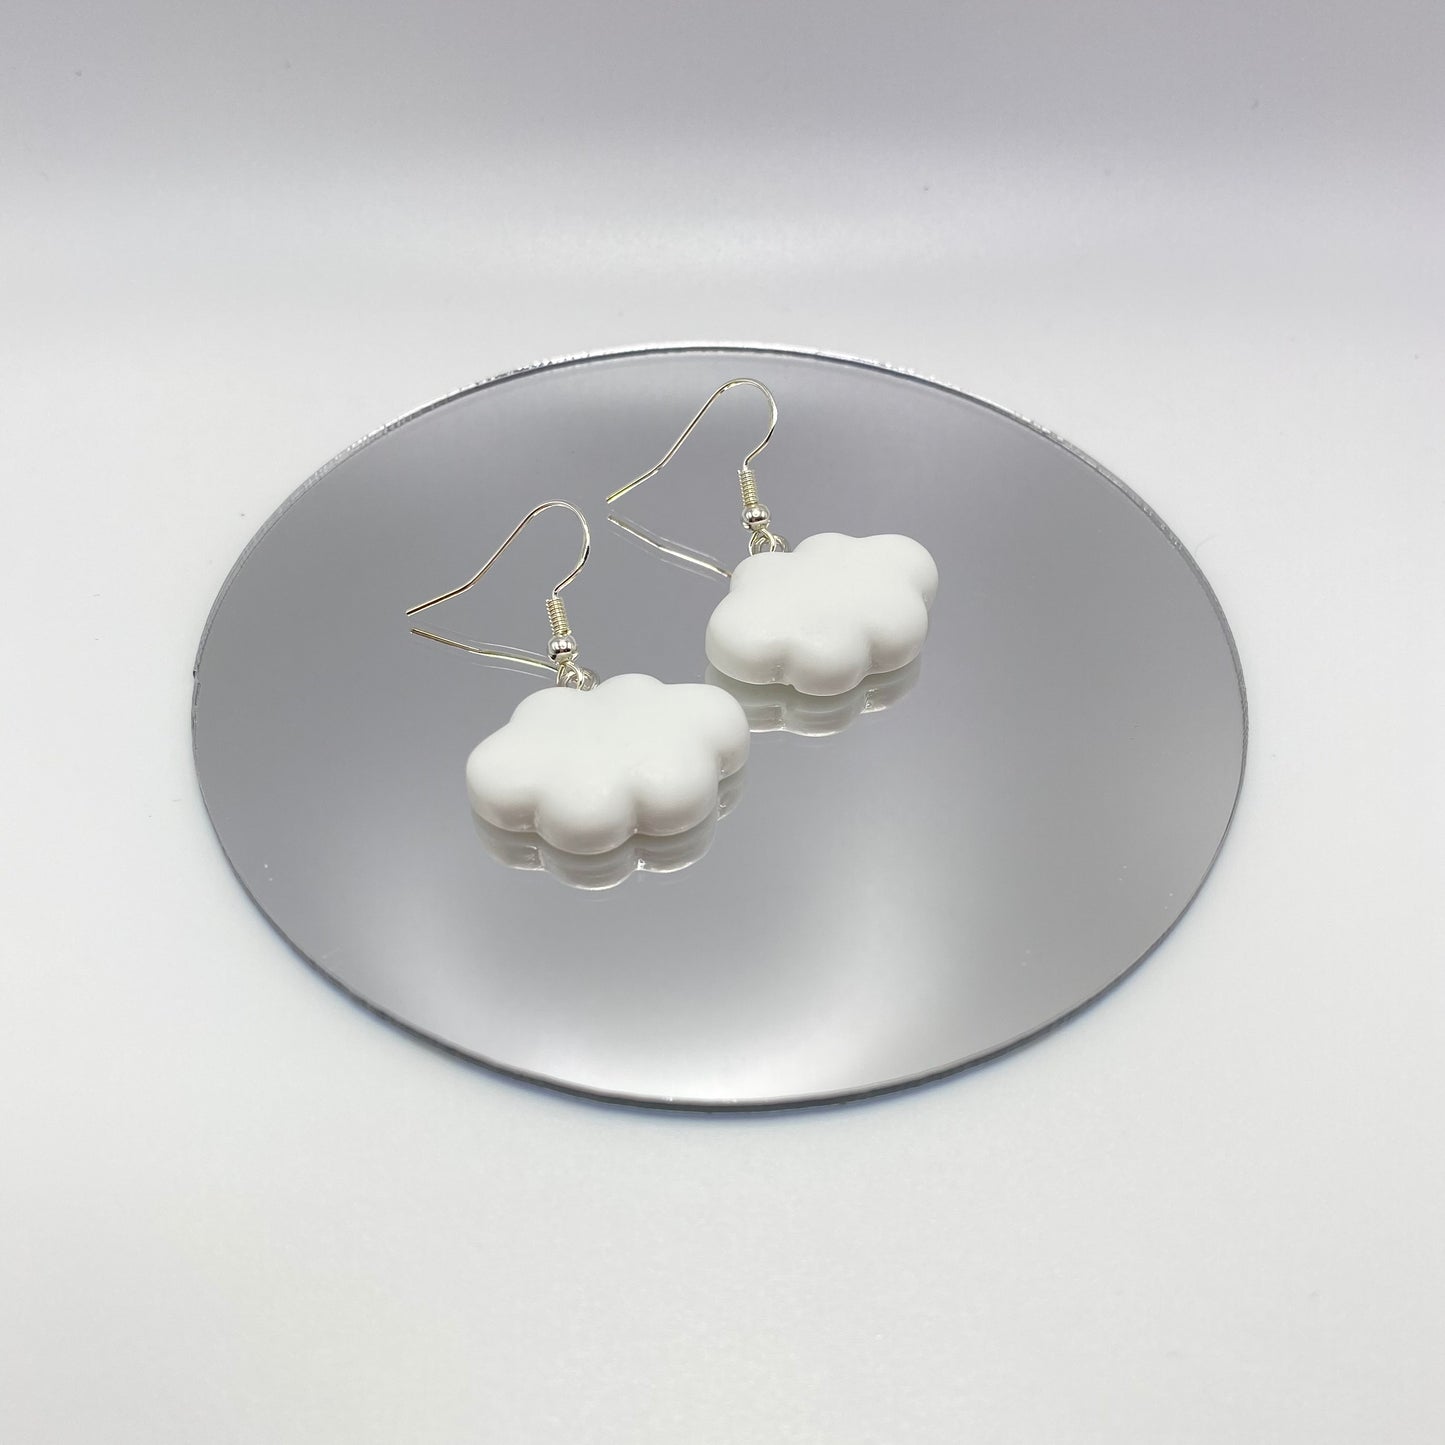 White Cloud Earrings